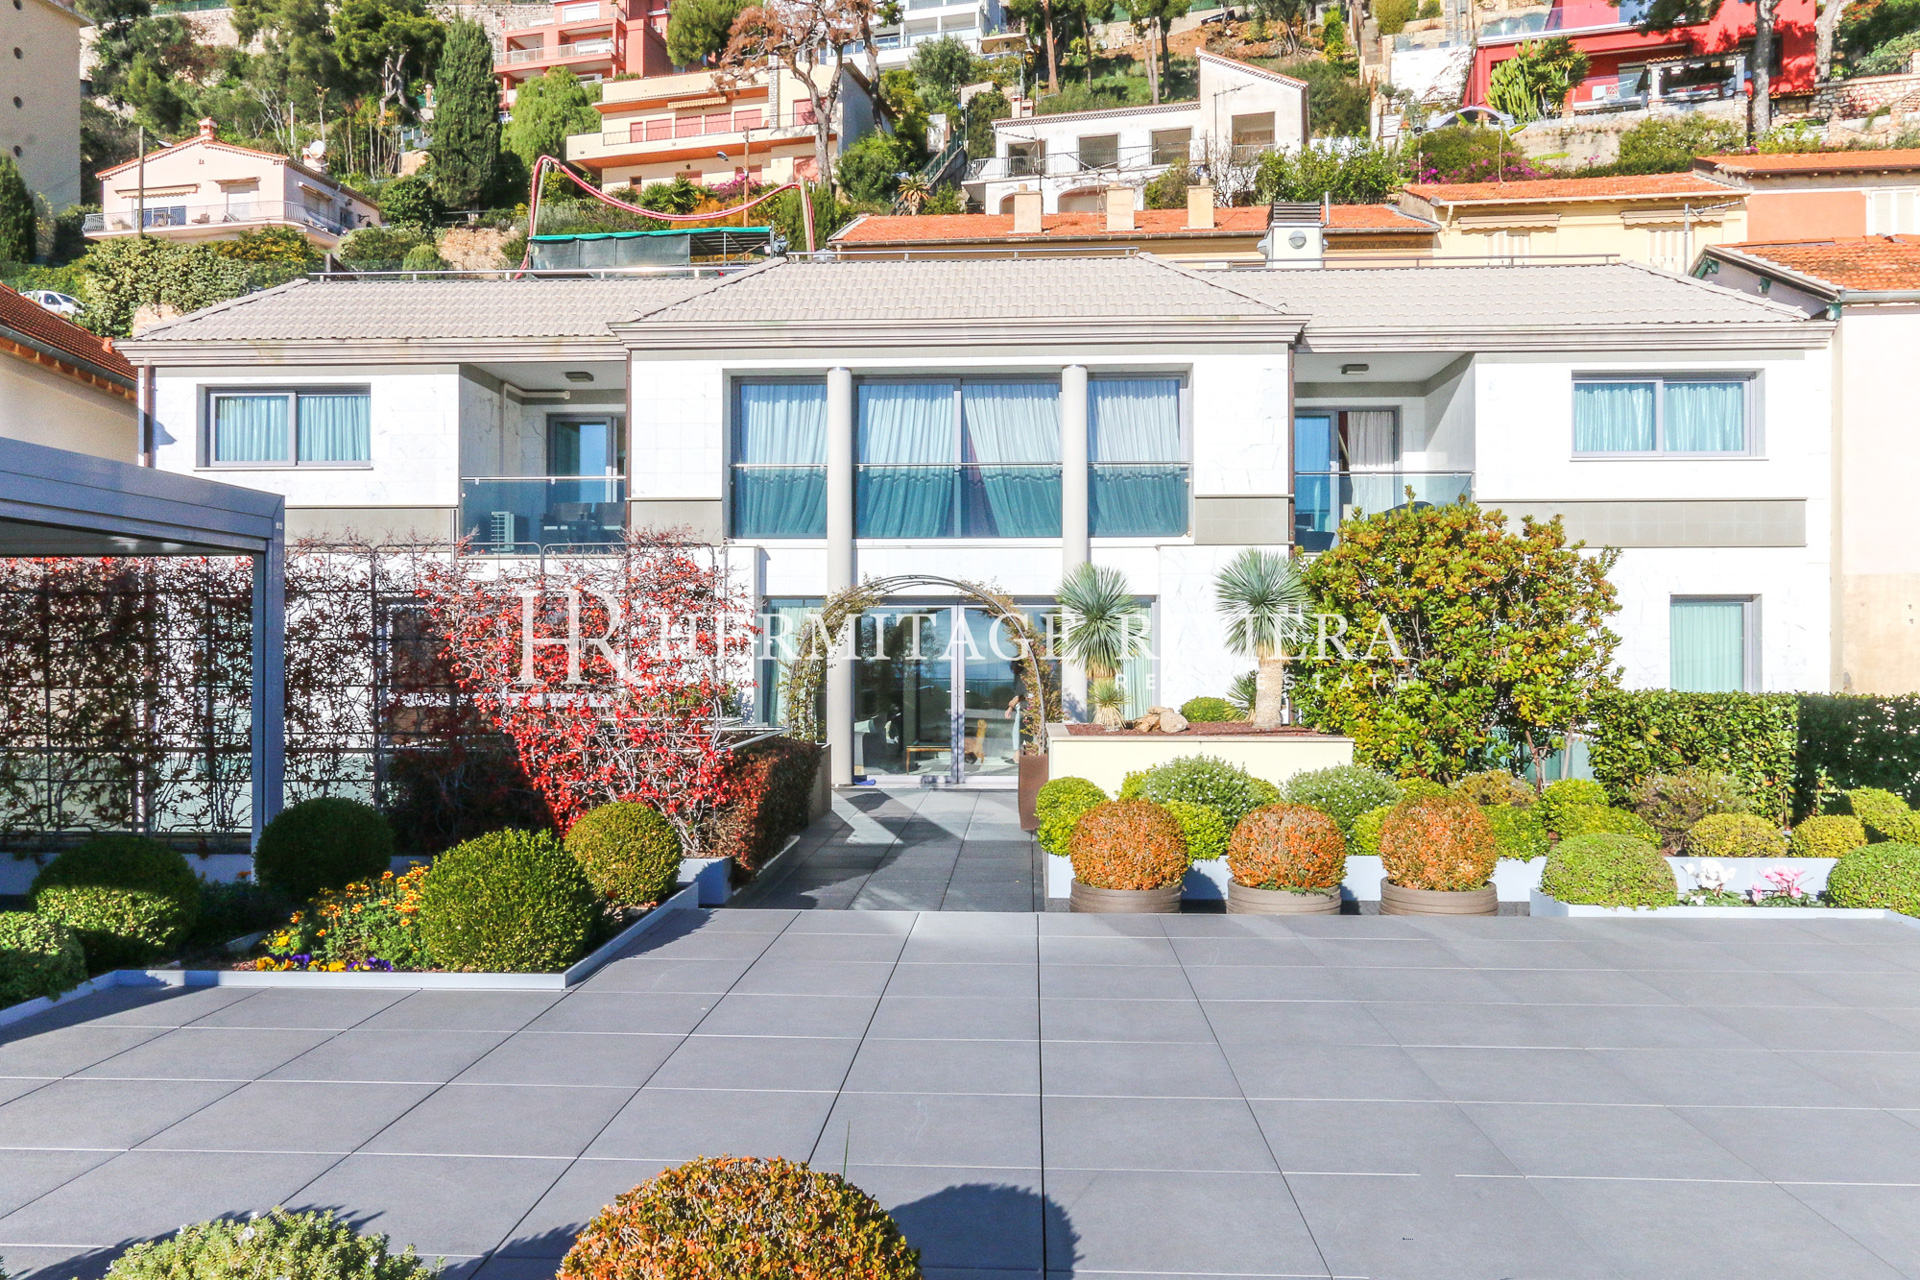 Somptueux appartement triplex à la frontière avec Monaco (image 1)